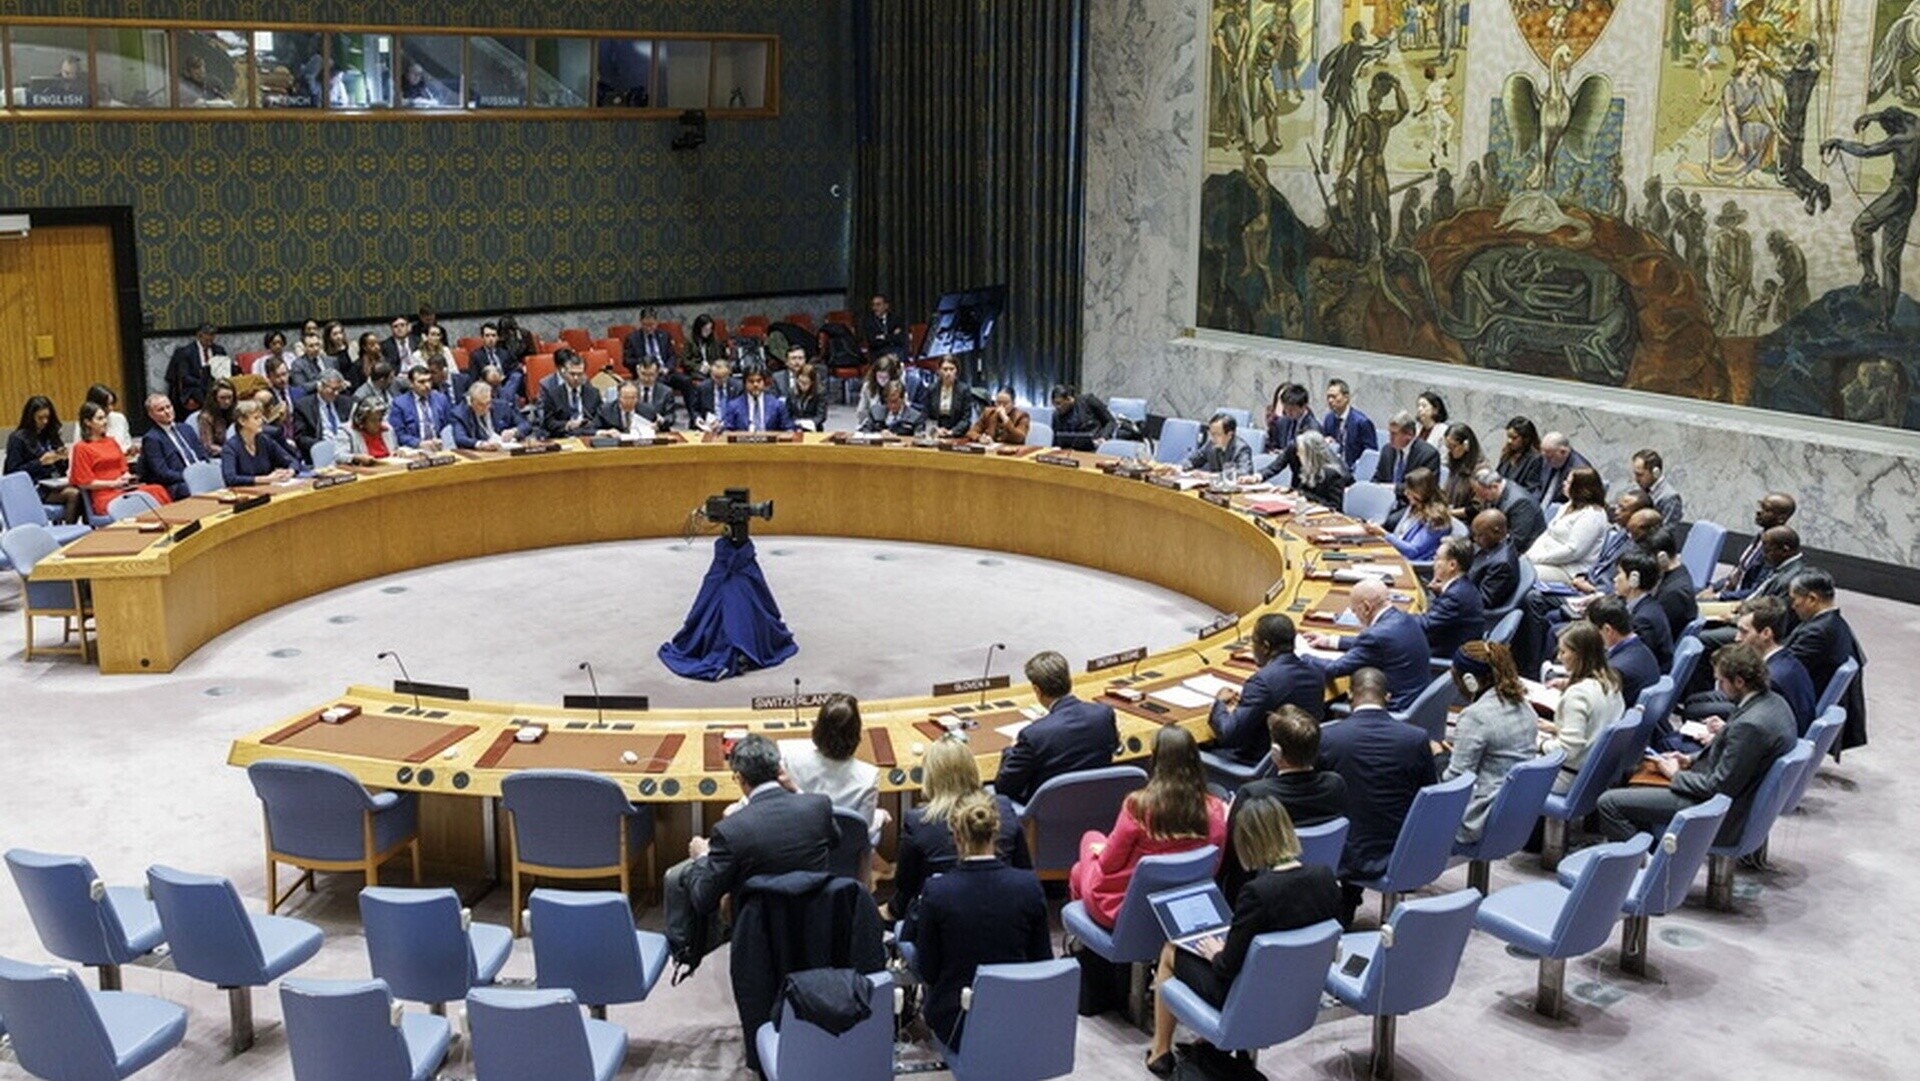 Επίθεση του Ιράν στο Ισραήλ: Έκτακτη συνεδρίαση του Συμβουλίου Ασφαλείας του ΟΗΕ